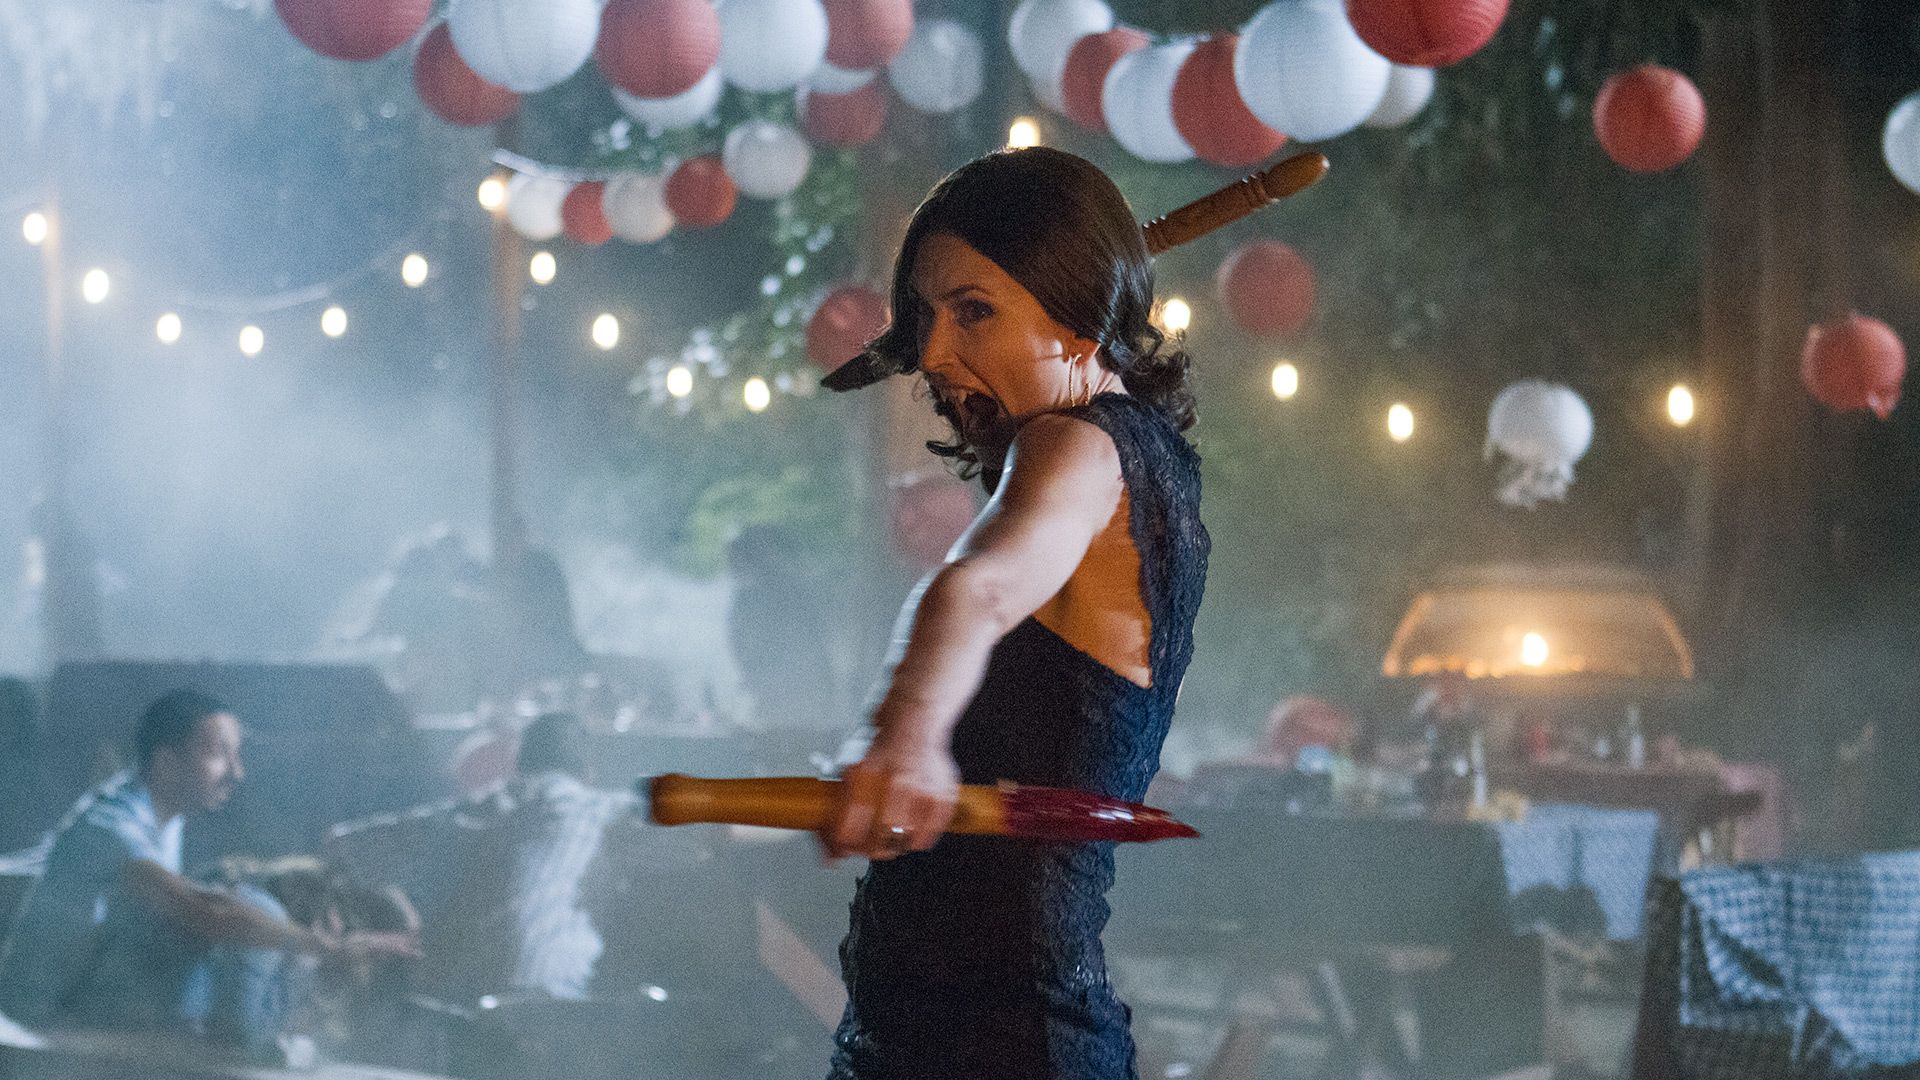 True Blood Season Premiere Recap Plus Preview Of New Episodes